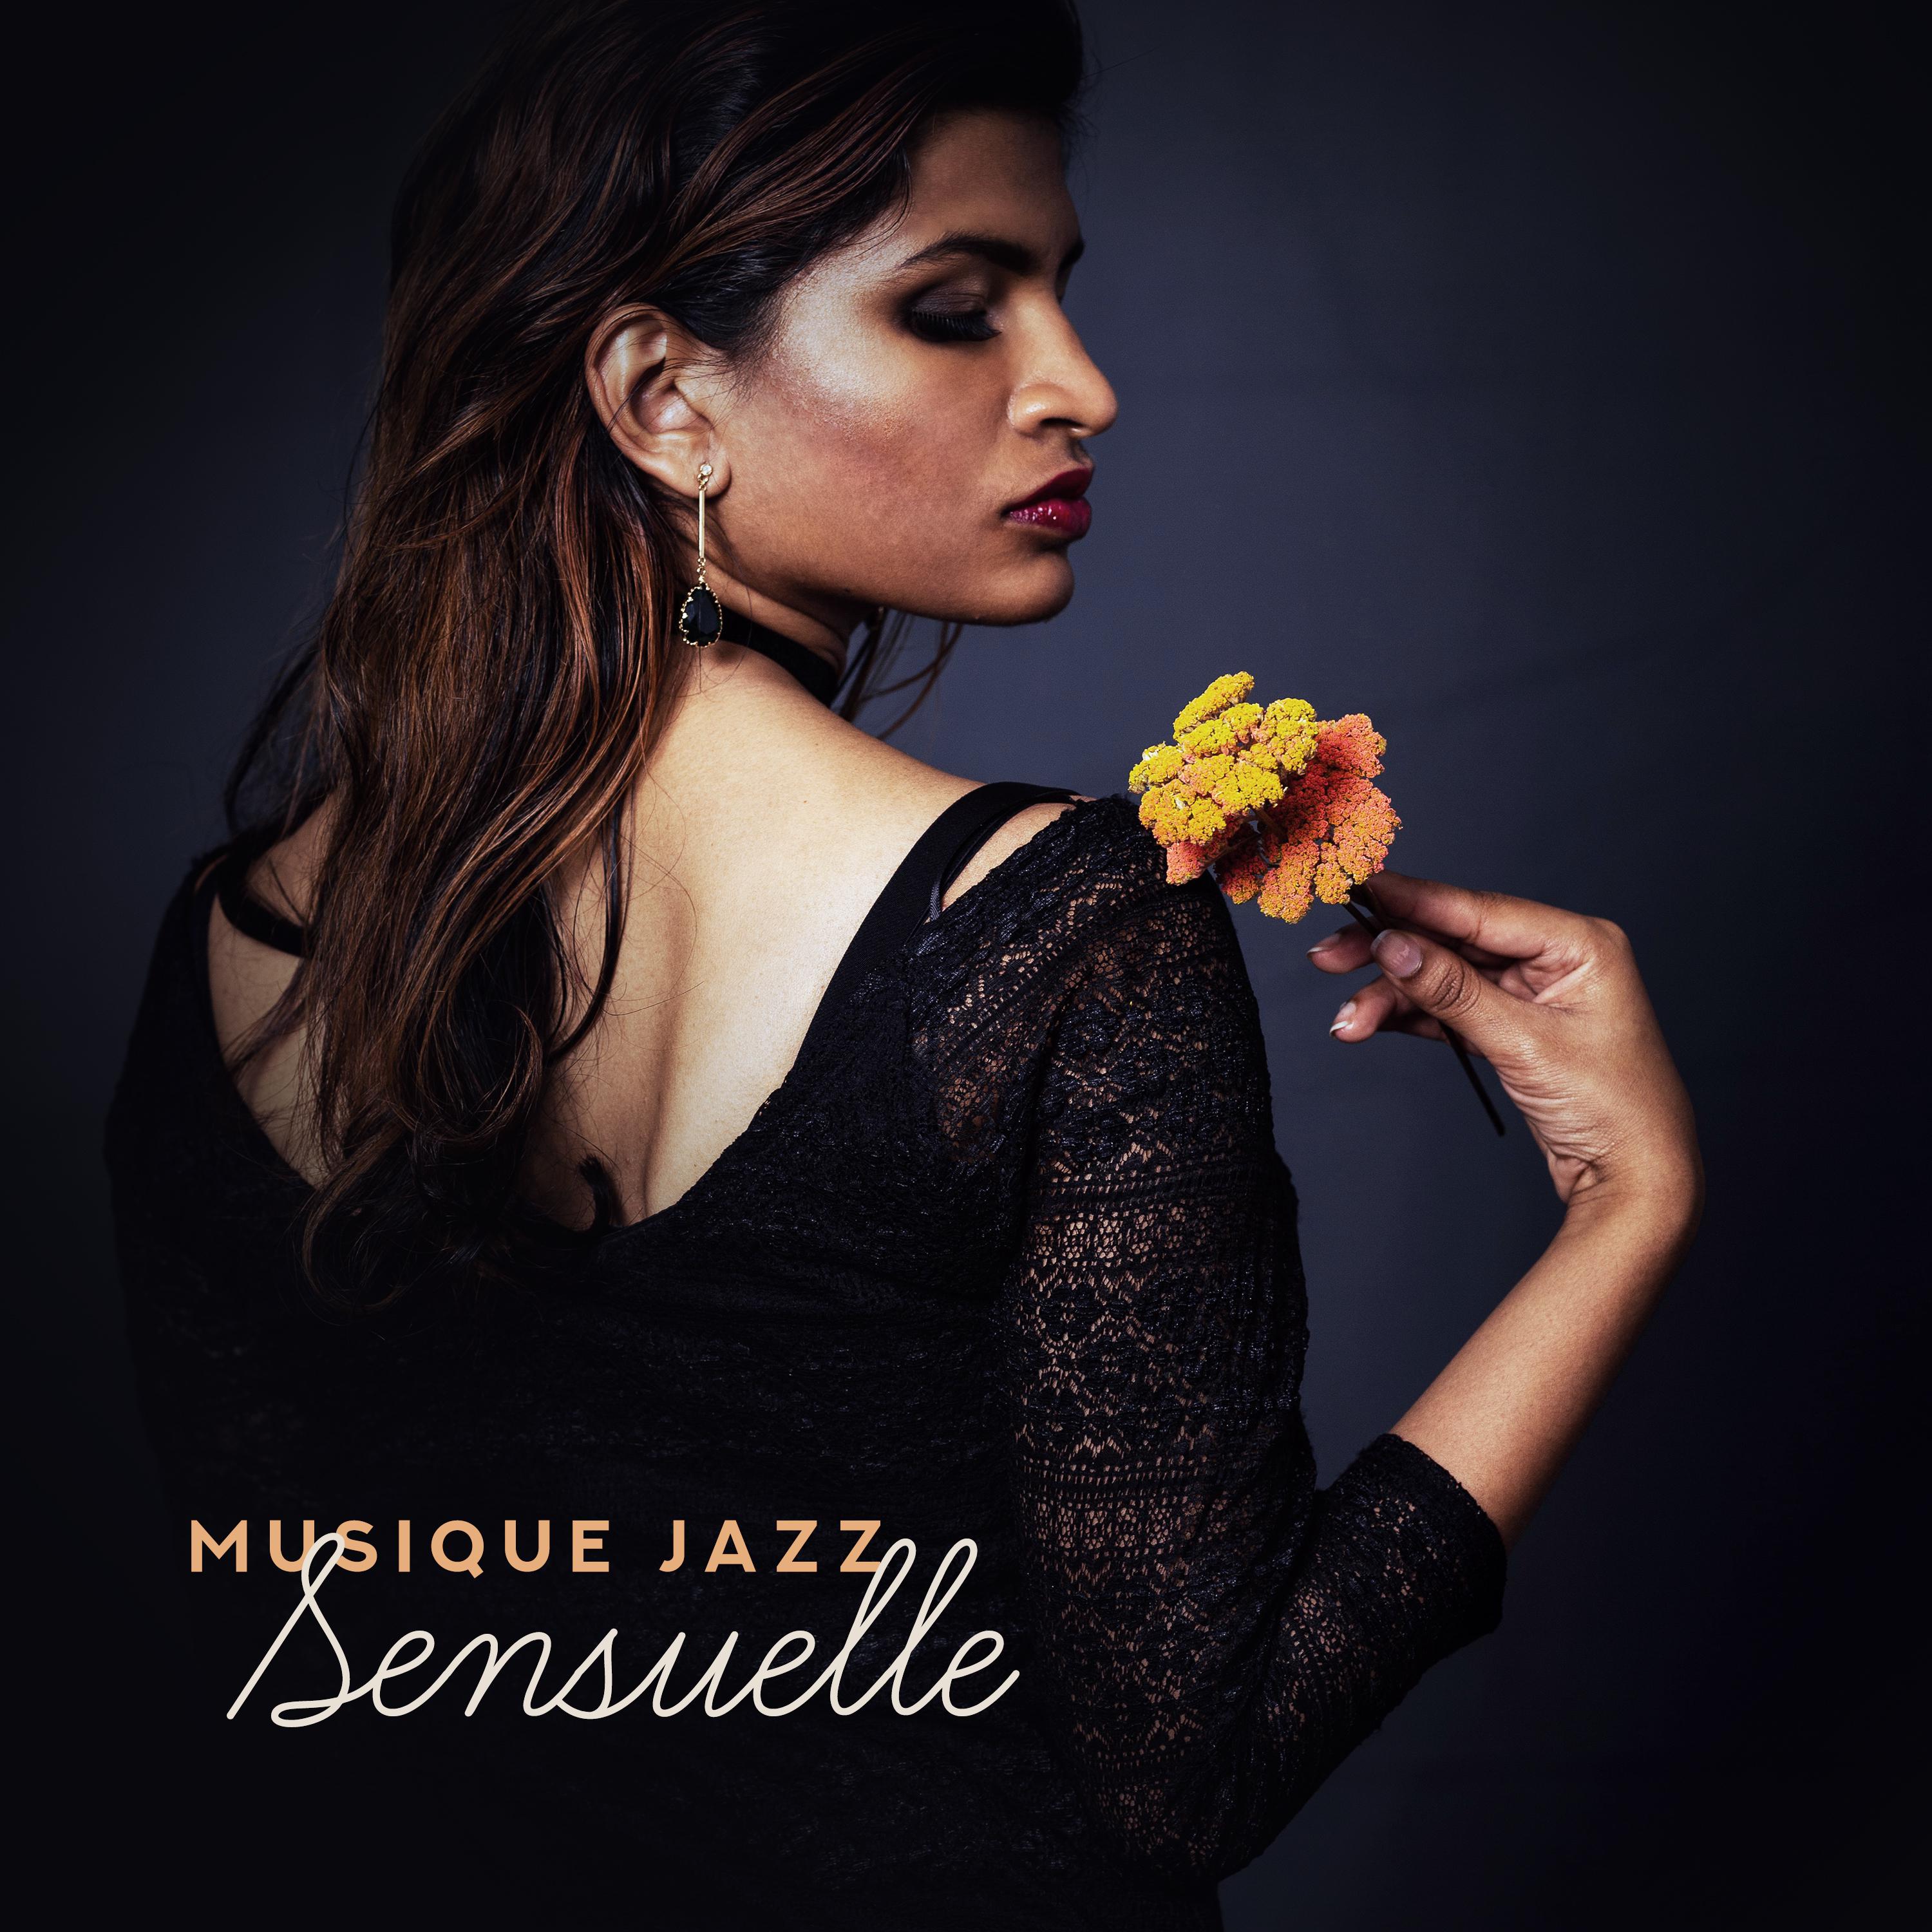 Musique Jazz Sensuelle - Compilation de Musique Smooth Jazz Fraîche